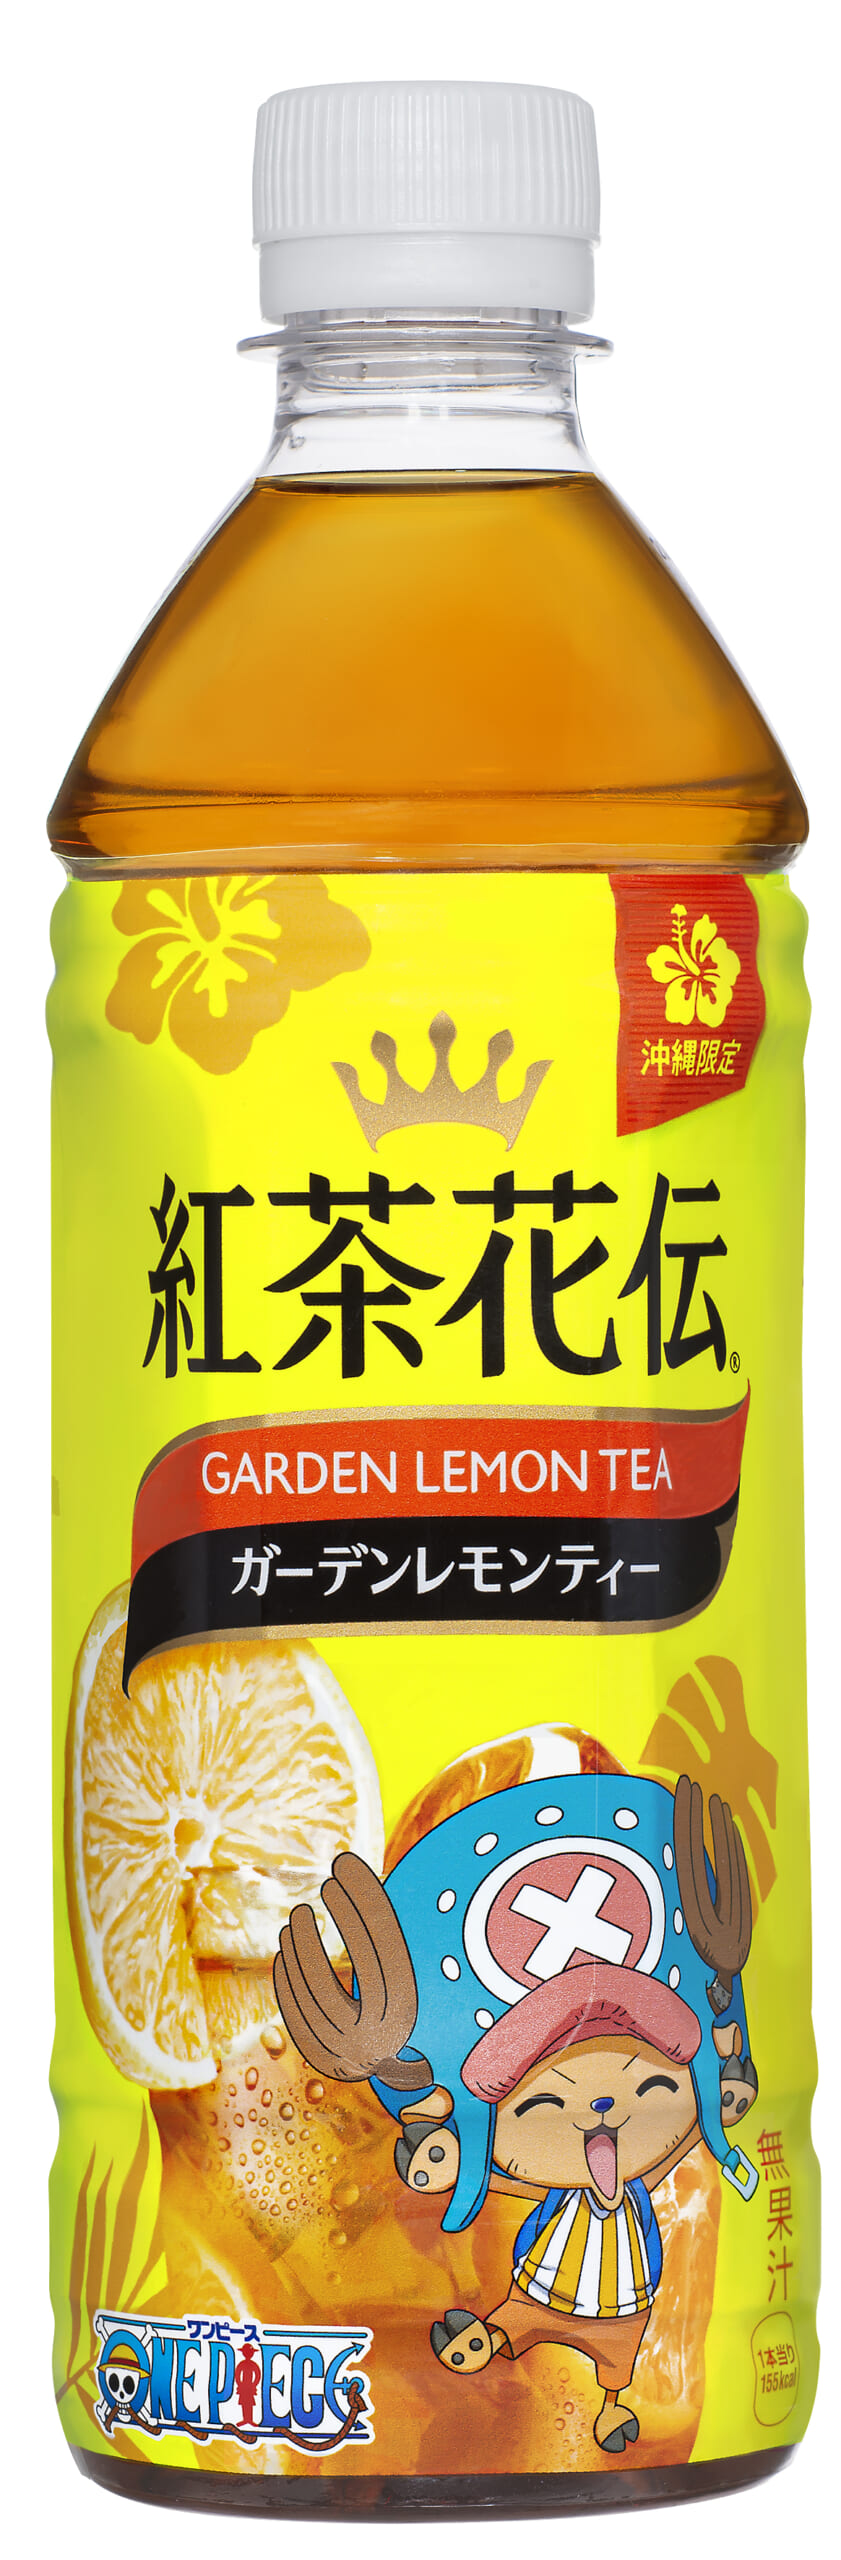 紅茶花伝 ガーデンレモンティー